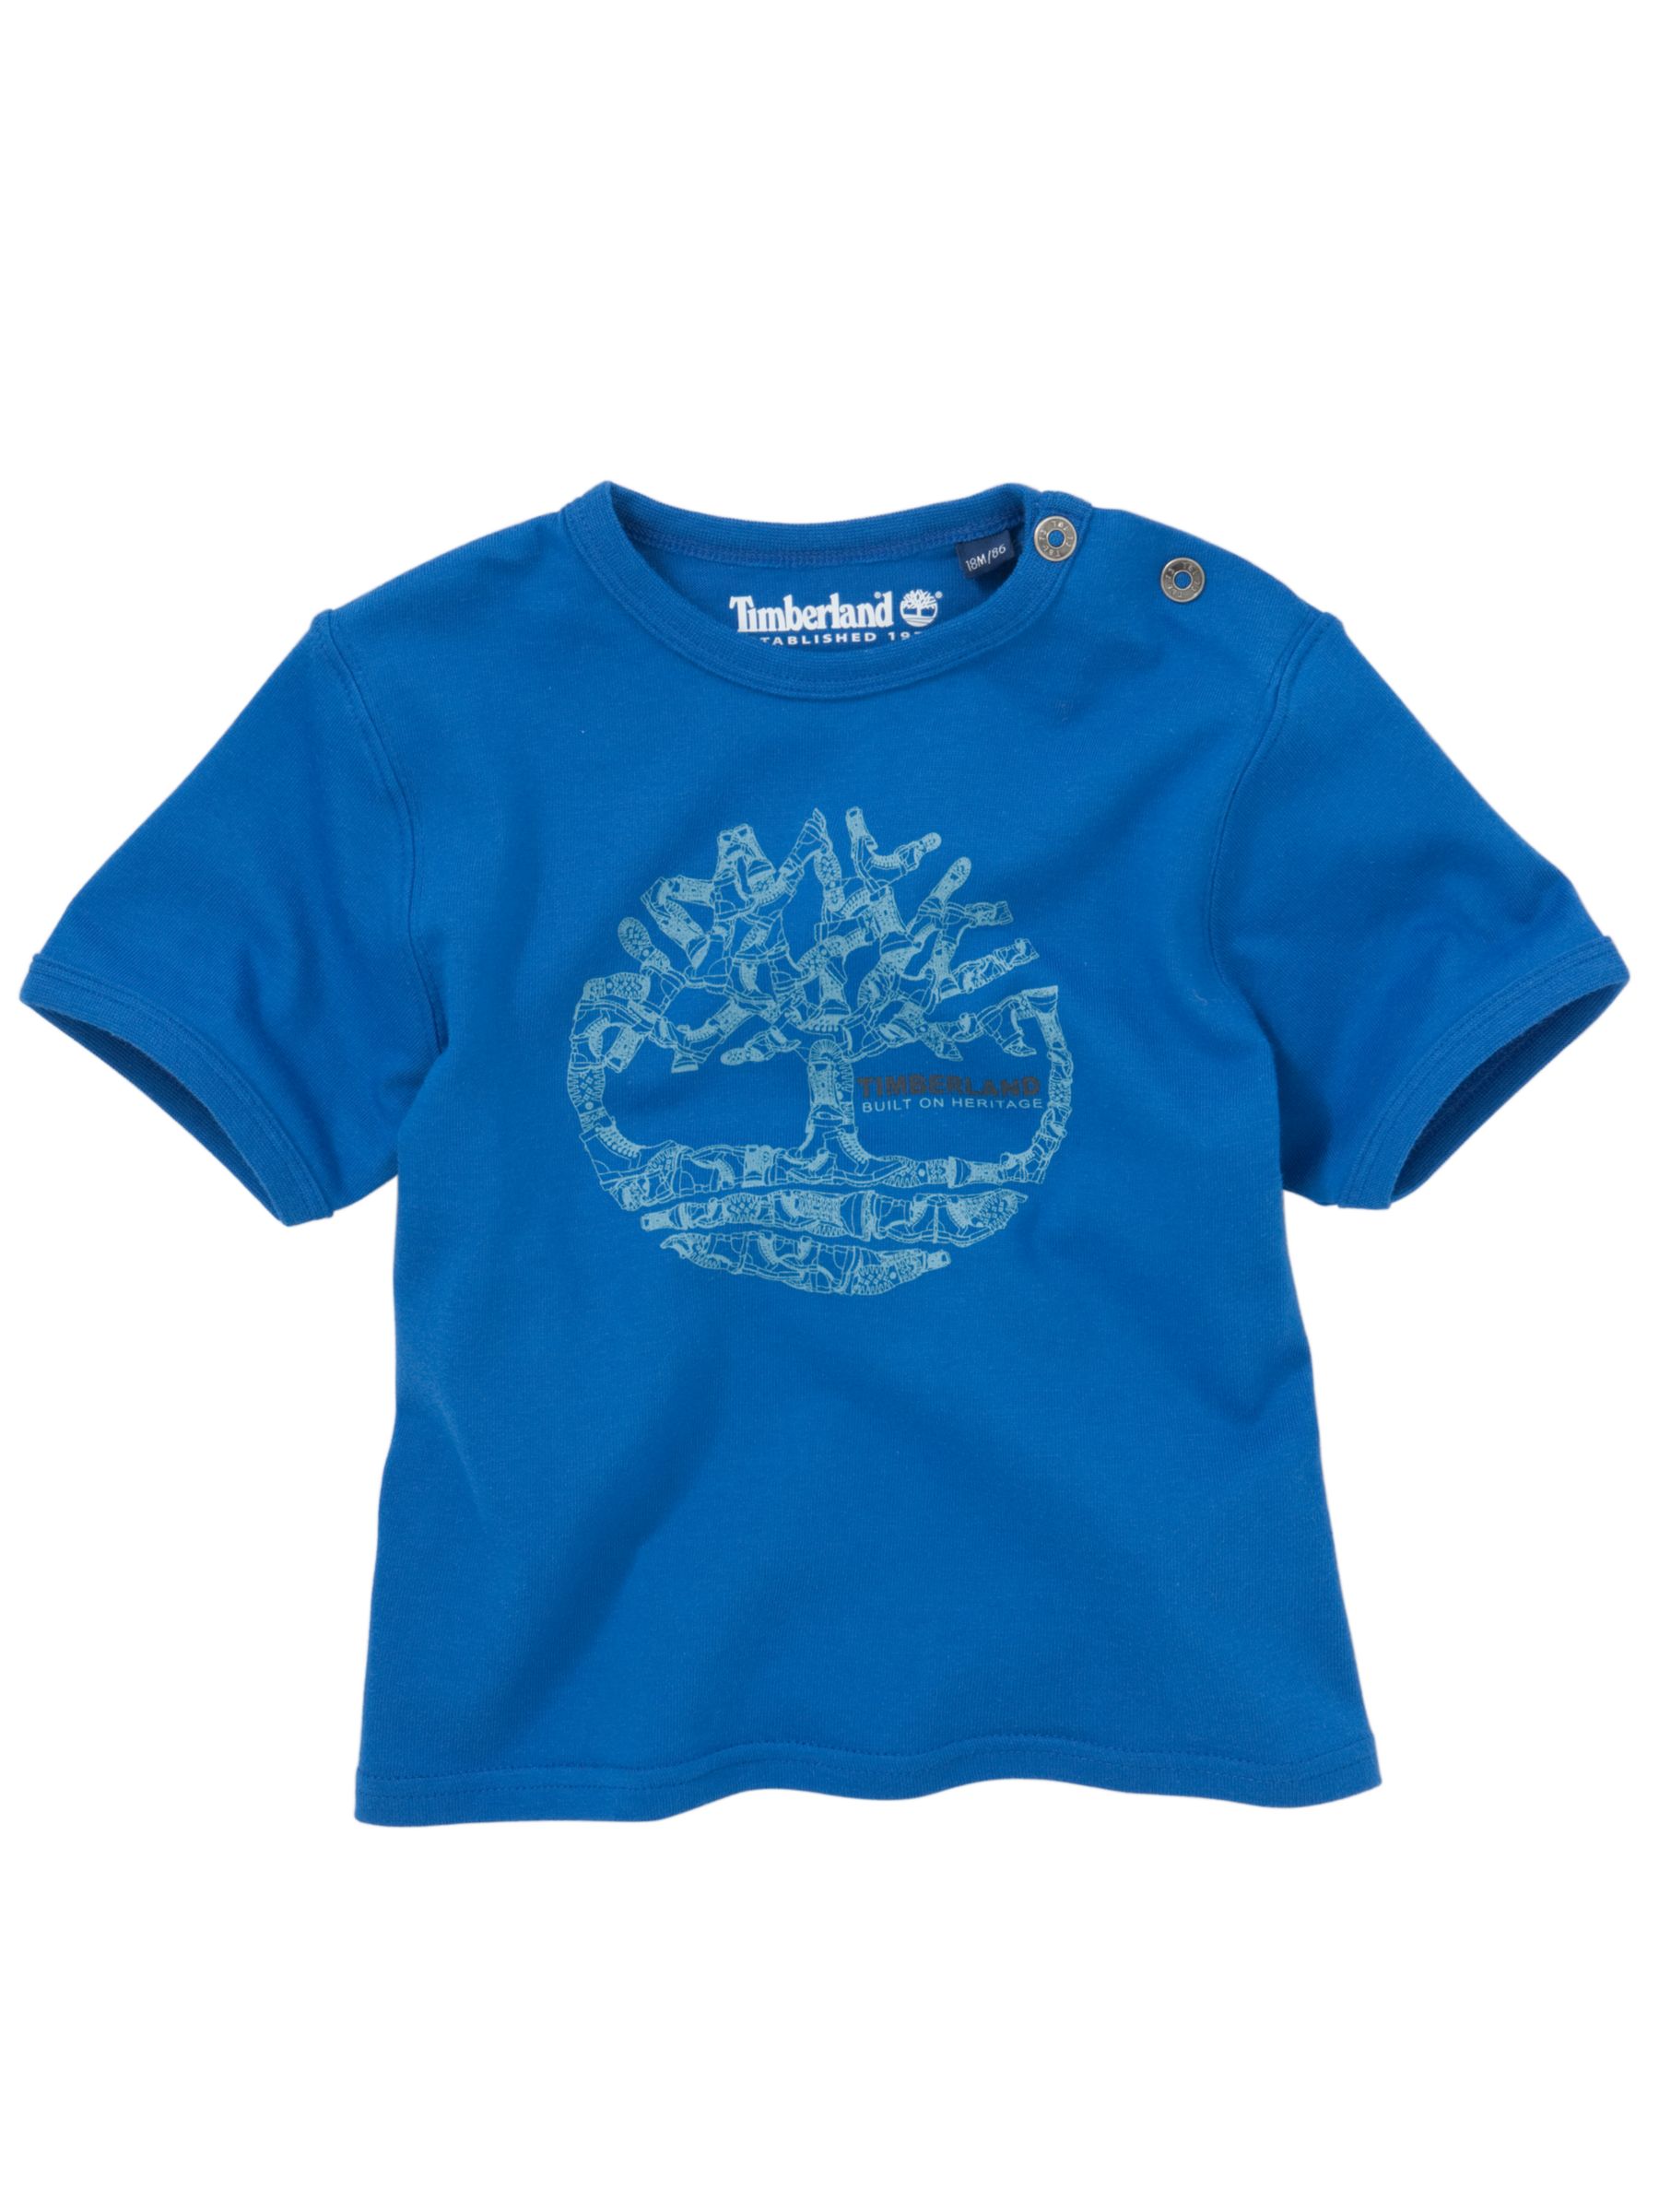 Timberland Logo Short Sleeve T-Shirt, Blue